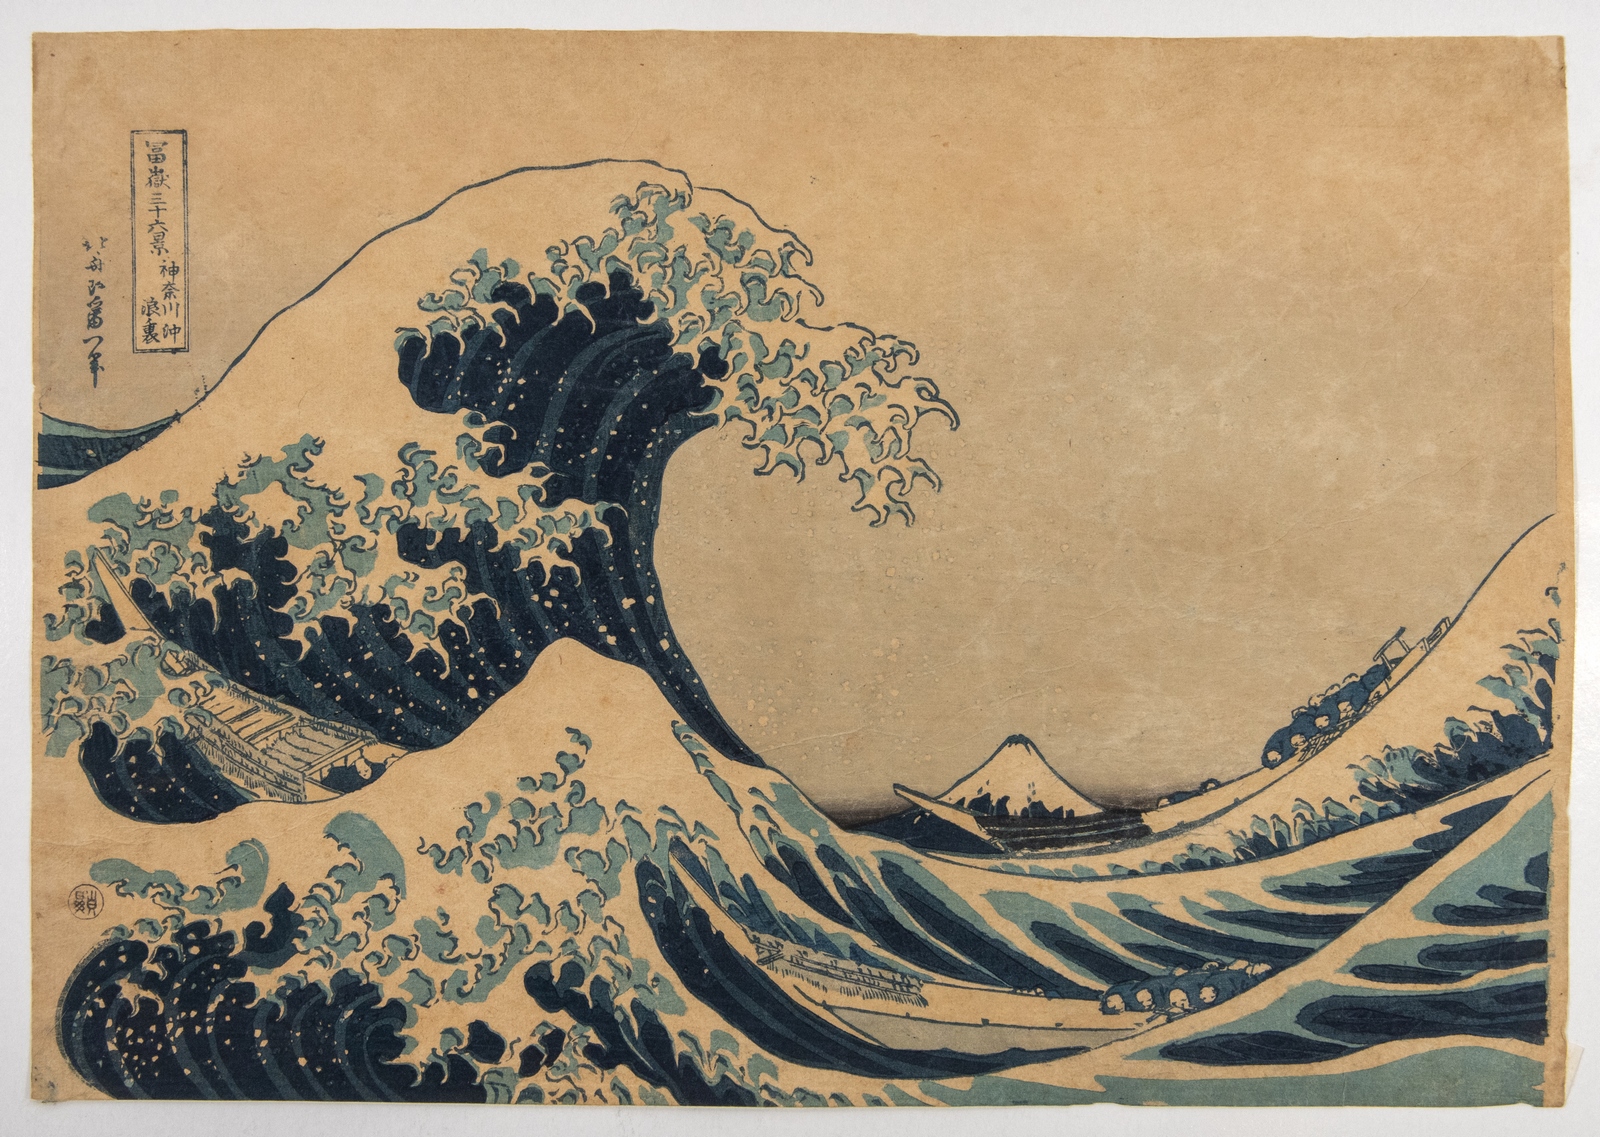 Katsushika Hokusai, La Grande onda, dalla serie Le 36 vedute del Monte Fuji, 1895-1915 ca., collezione privata.